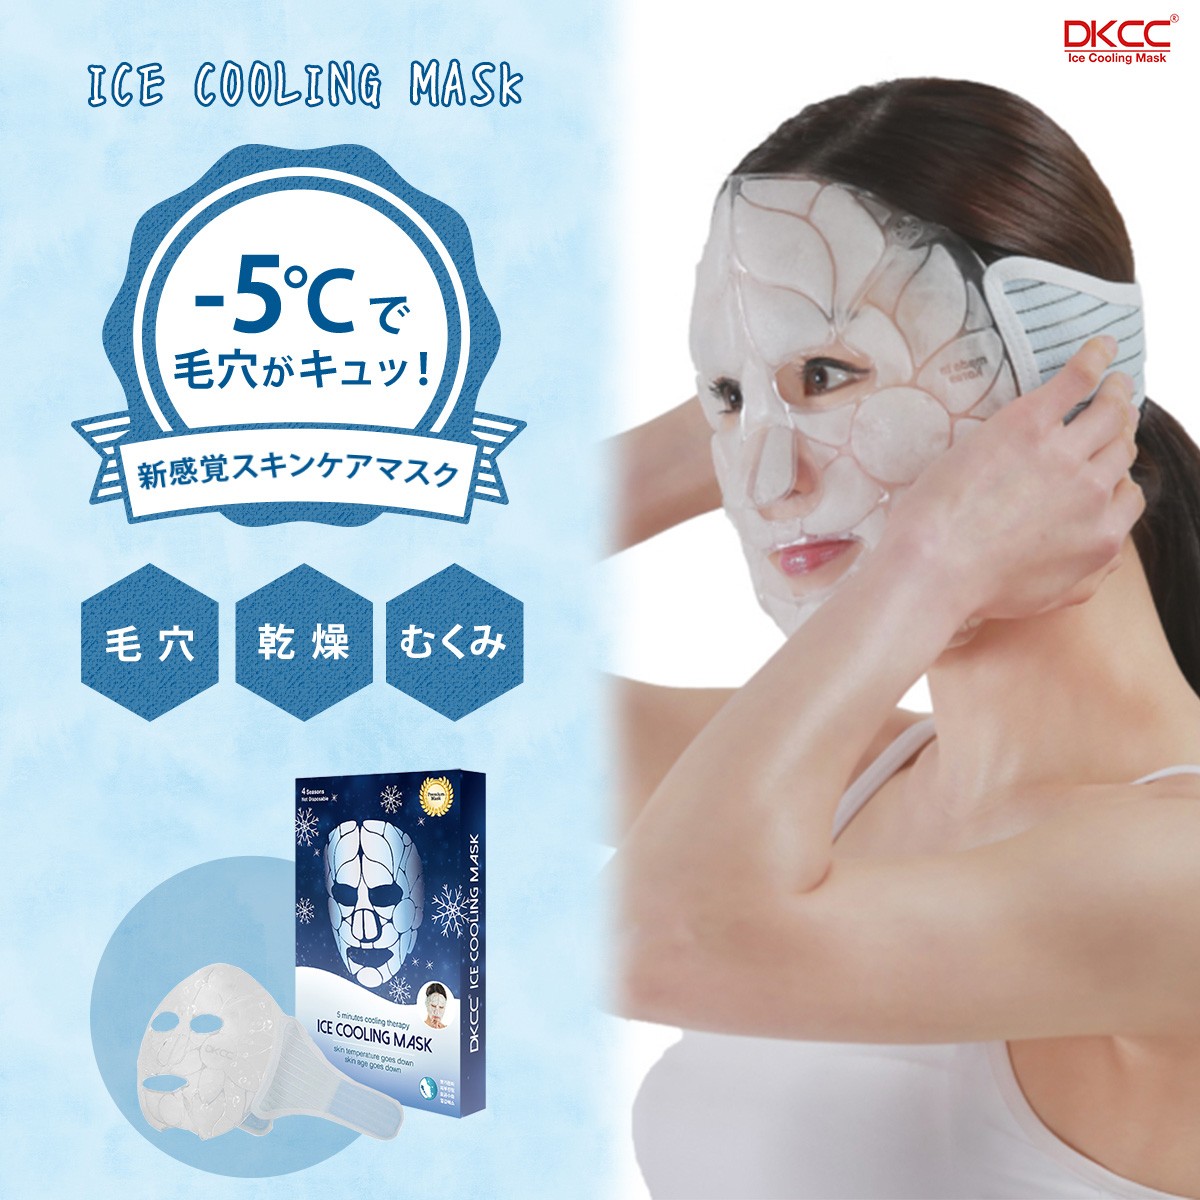 マスク フェイスマスク フェイスパック 韓国 プレゼント アイスクーリングマスク 引き締め ポイント消化  :8809458410001:JPT台湾コスメと世界の便利雑貨 - 通販 - Yahoo!ショッピング